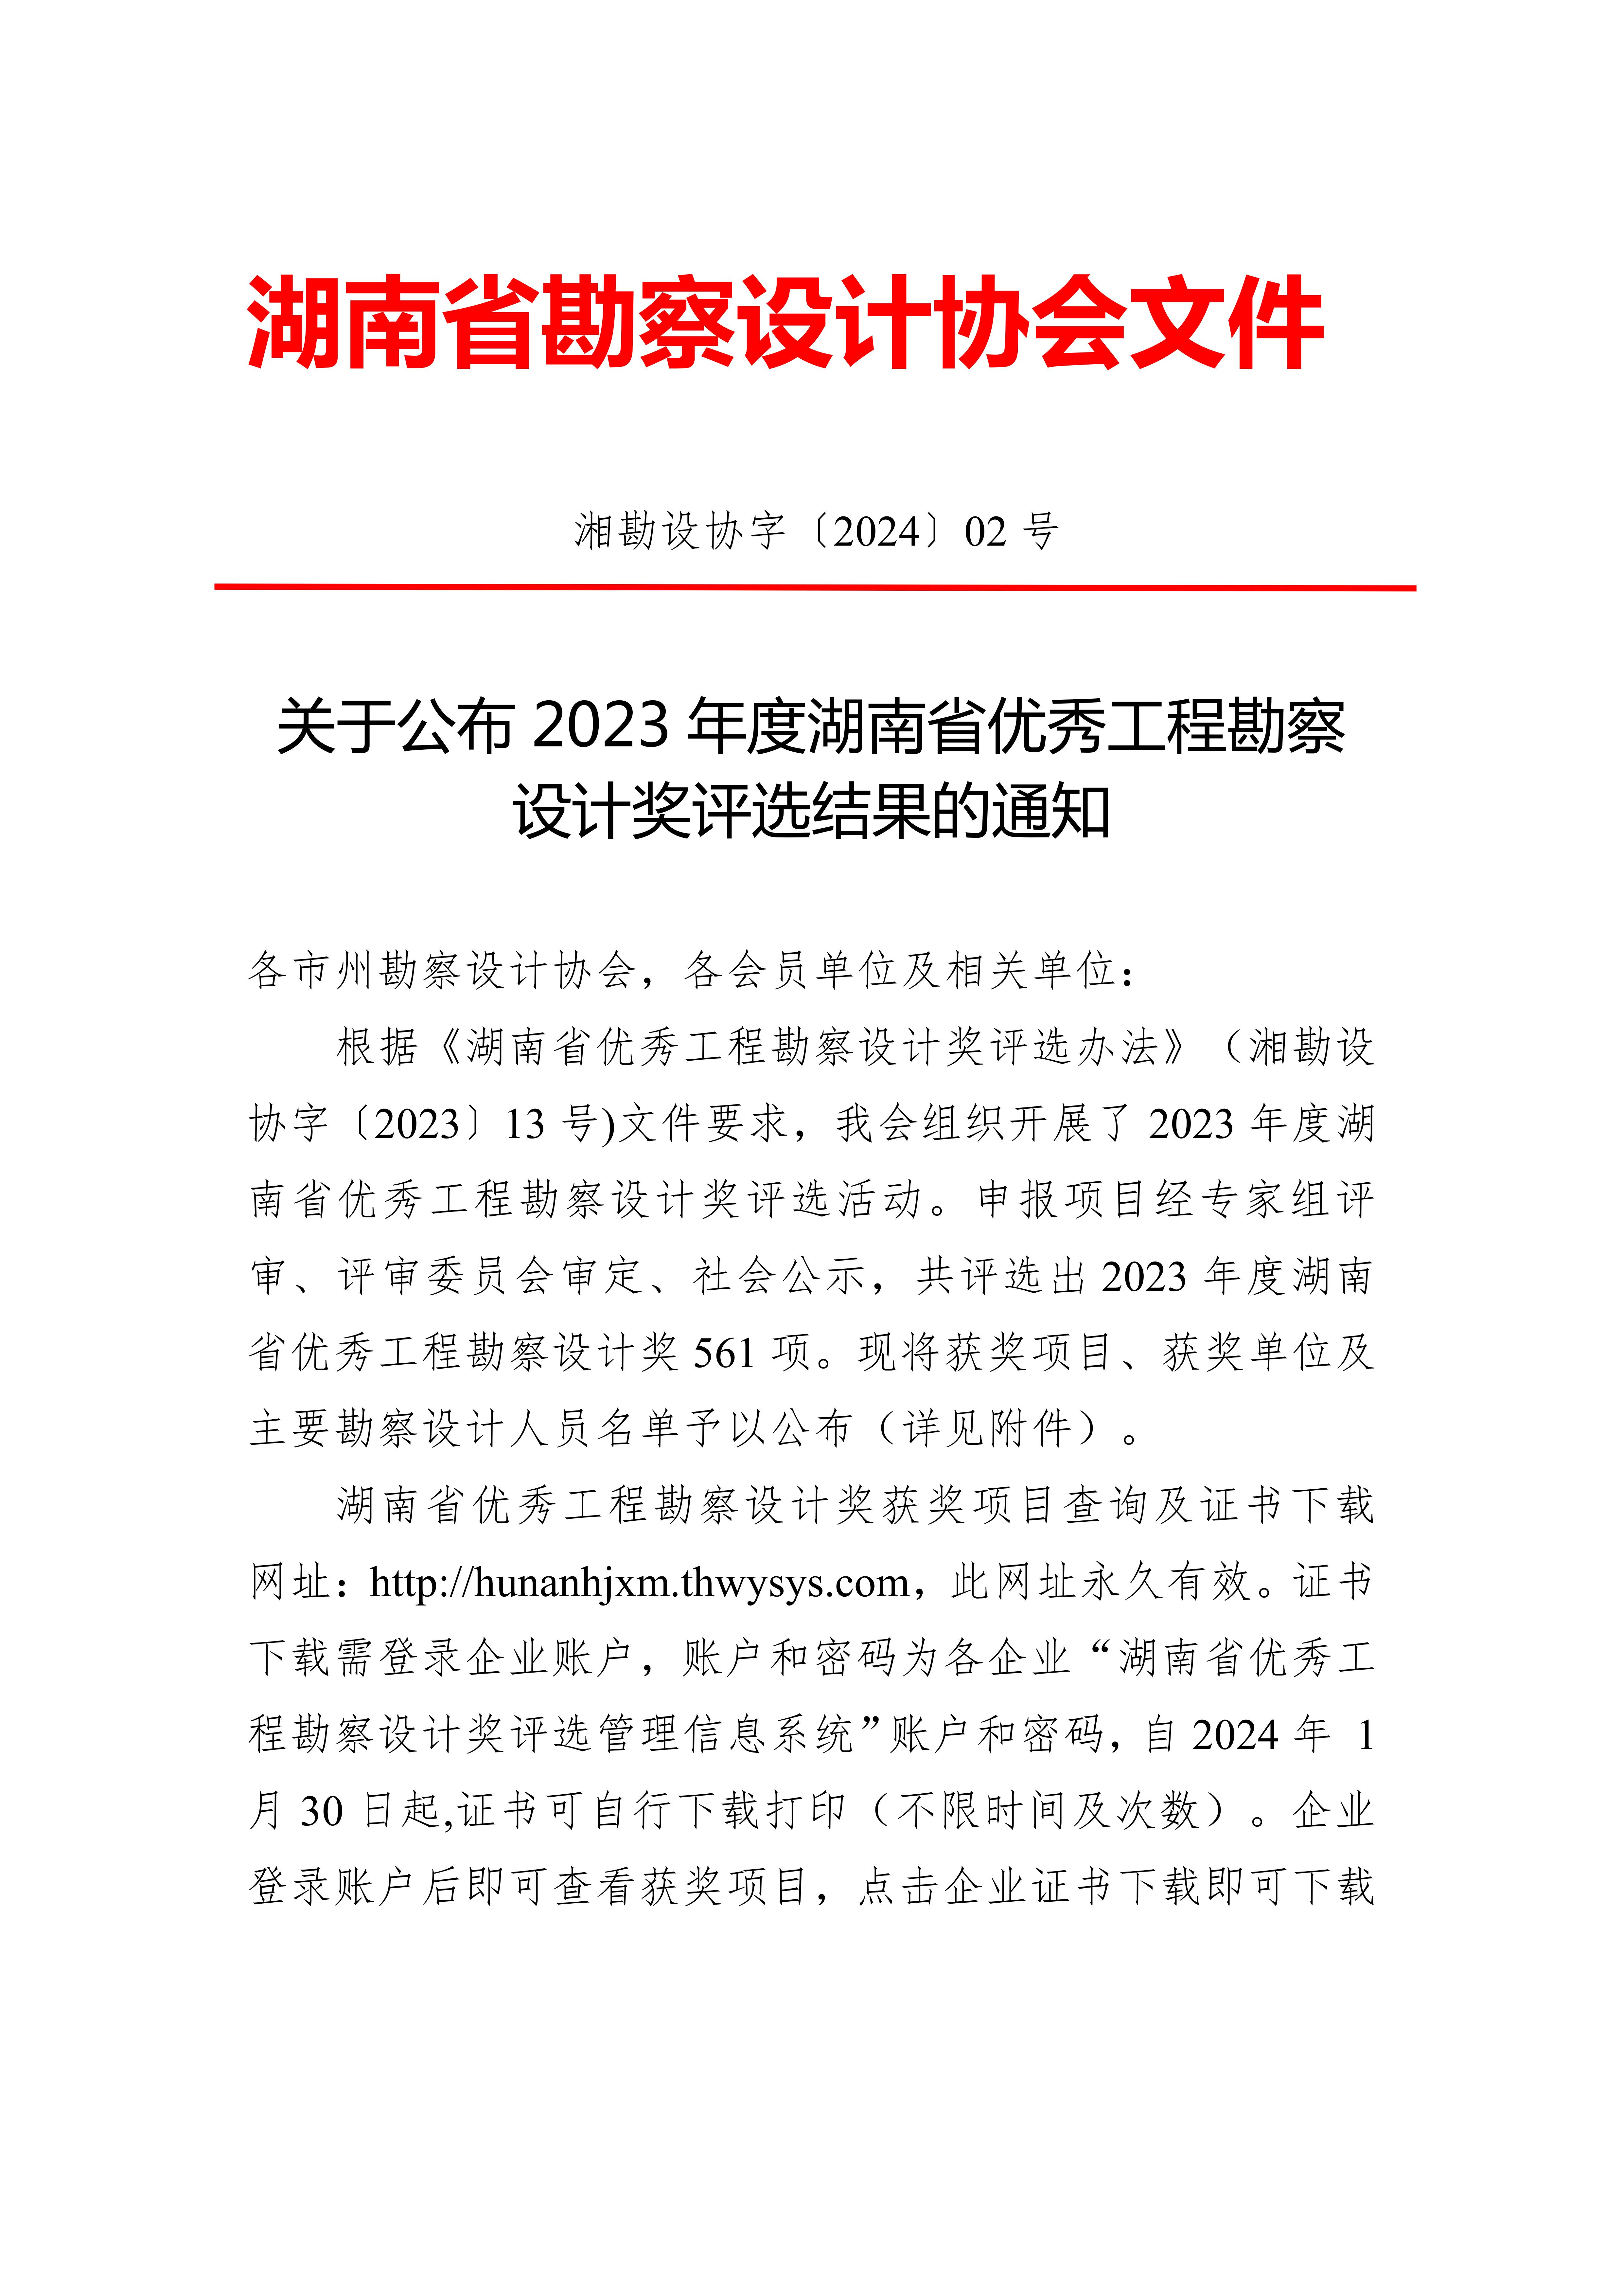 关于公布2023年度湖南省优秀工程勘察设计奖评选结果的通知_00.jpg